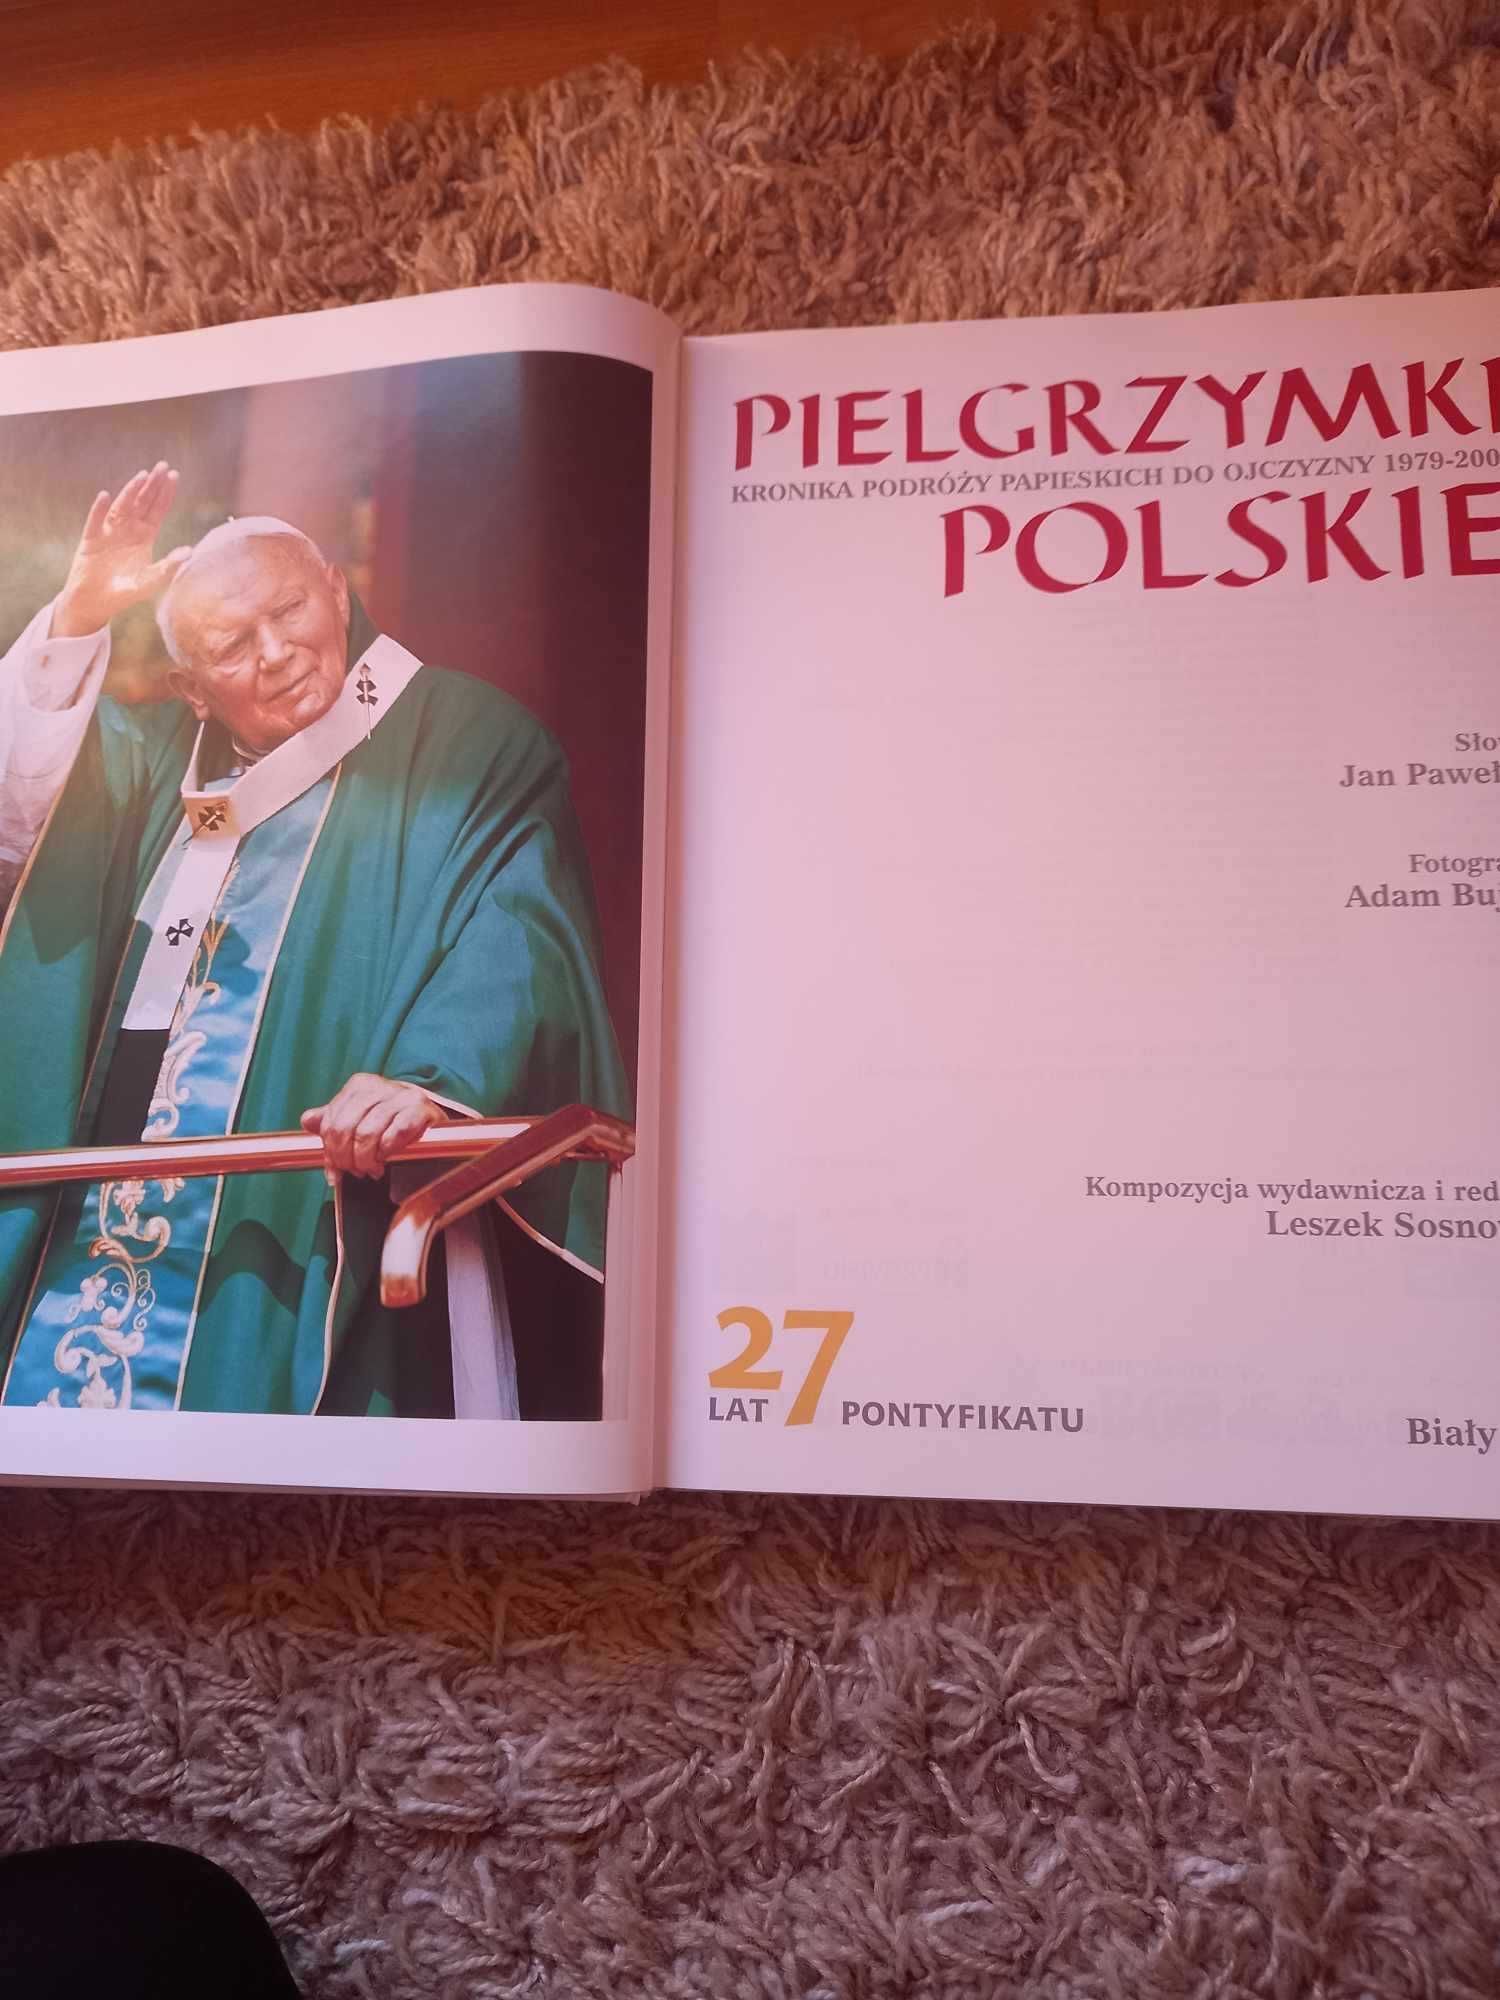 "Pielgrzymki Polskie - Kronika podróży papieskich do ojczyzny"